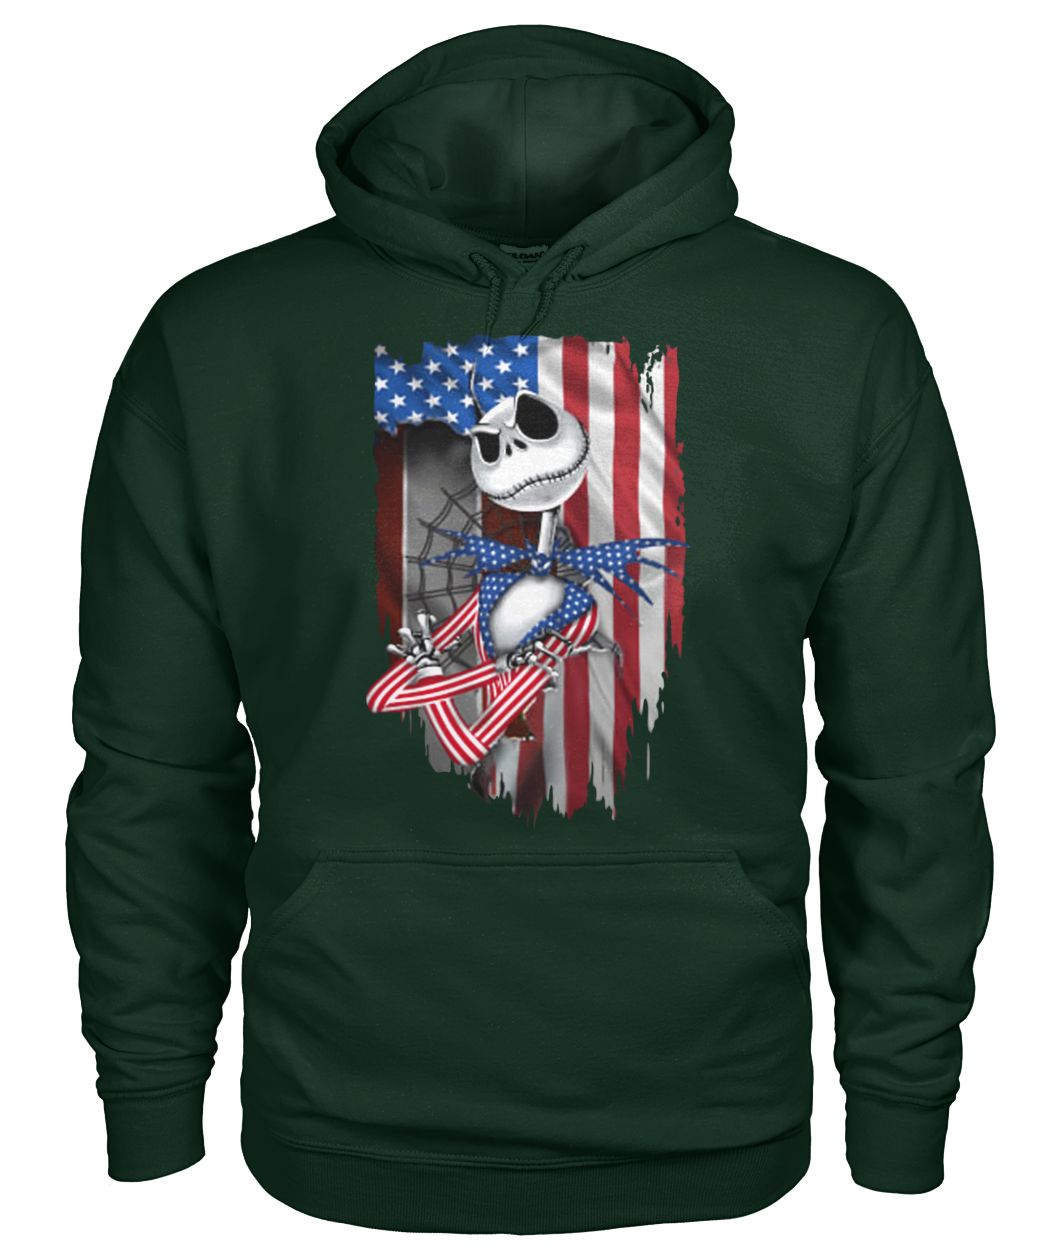 Jack skellington american flag independence day gildan hoodie